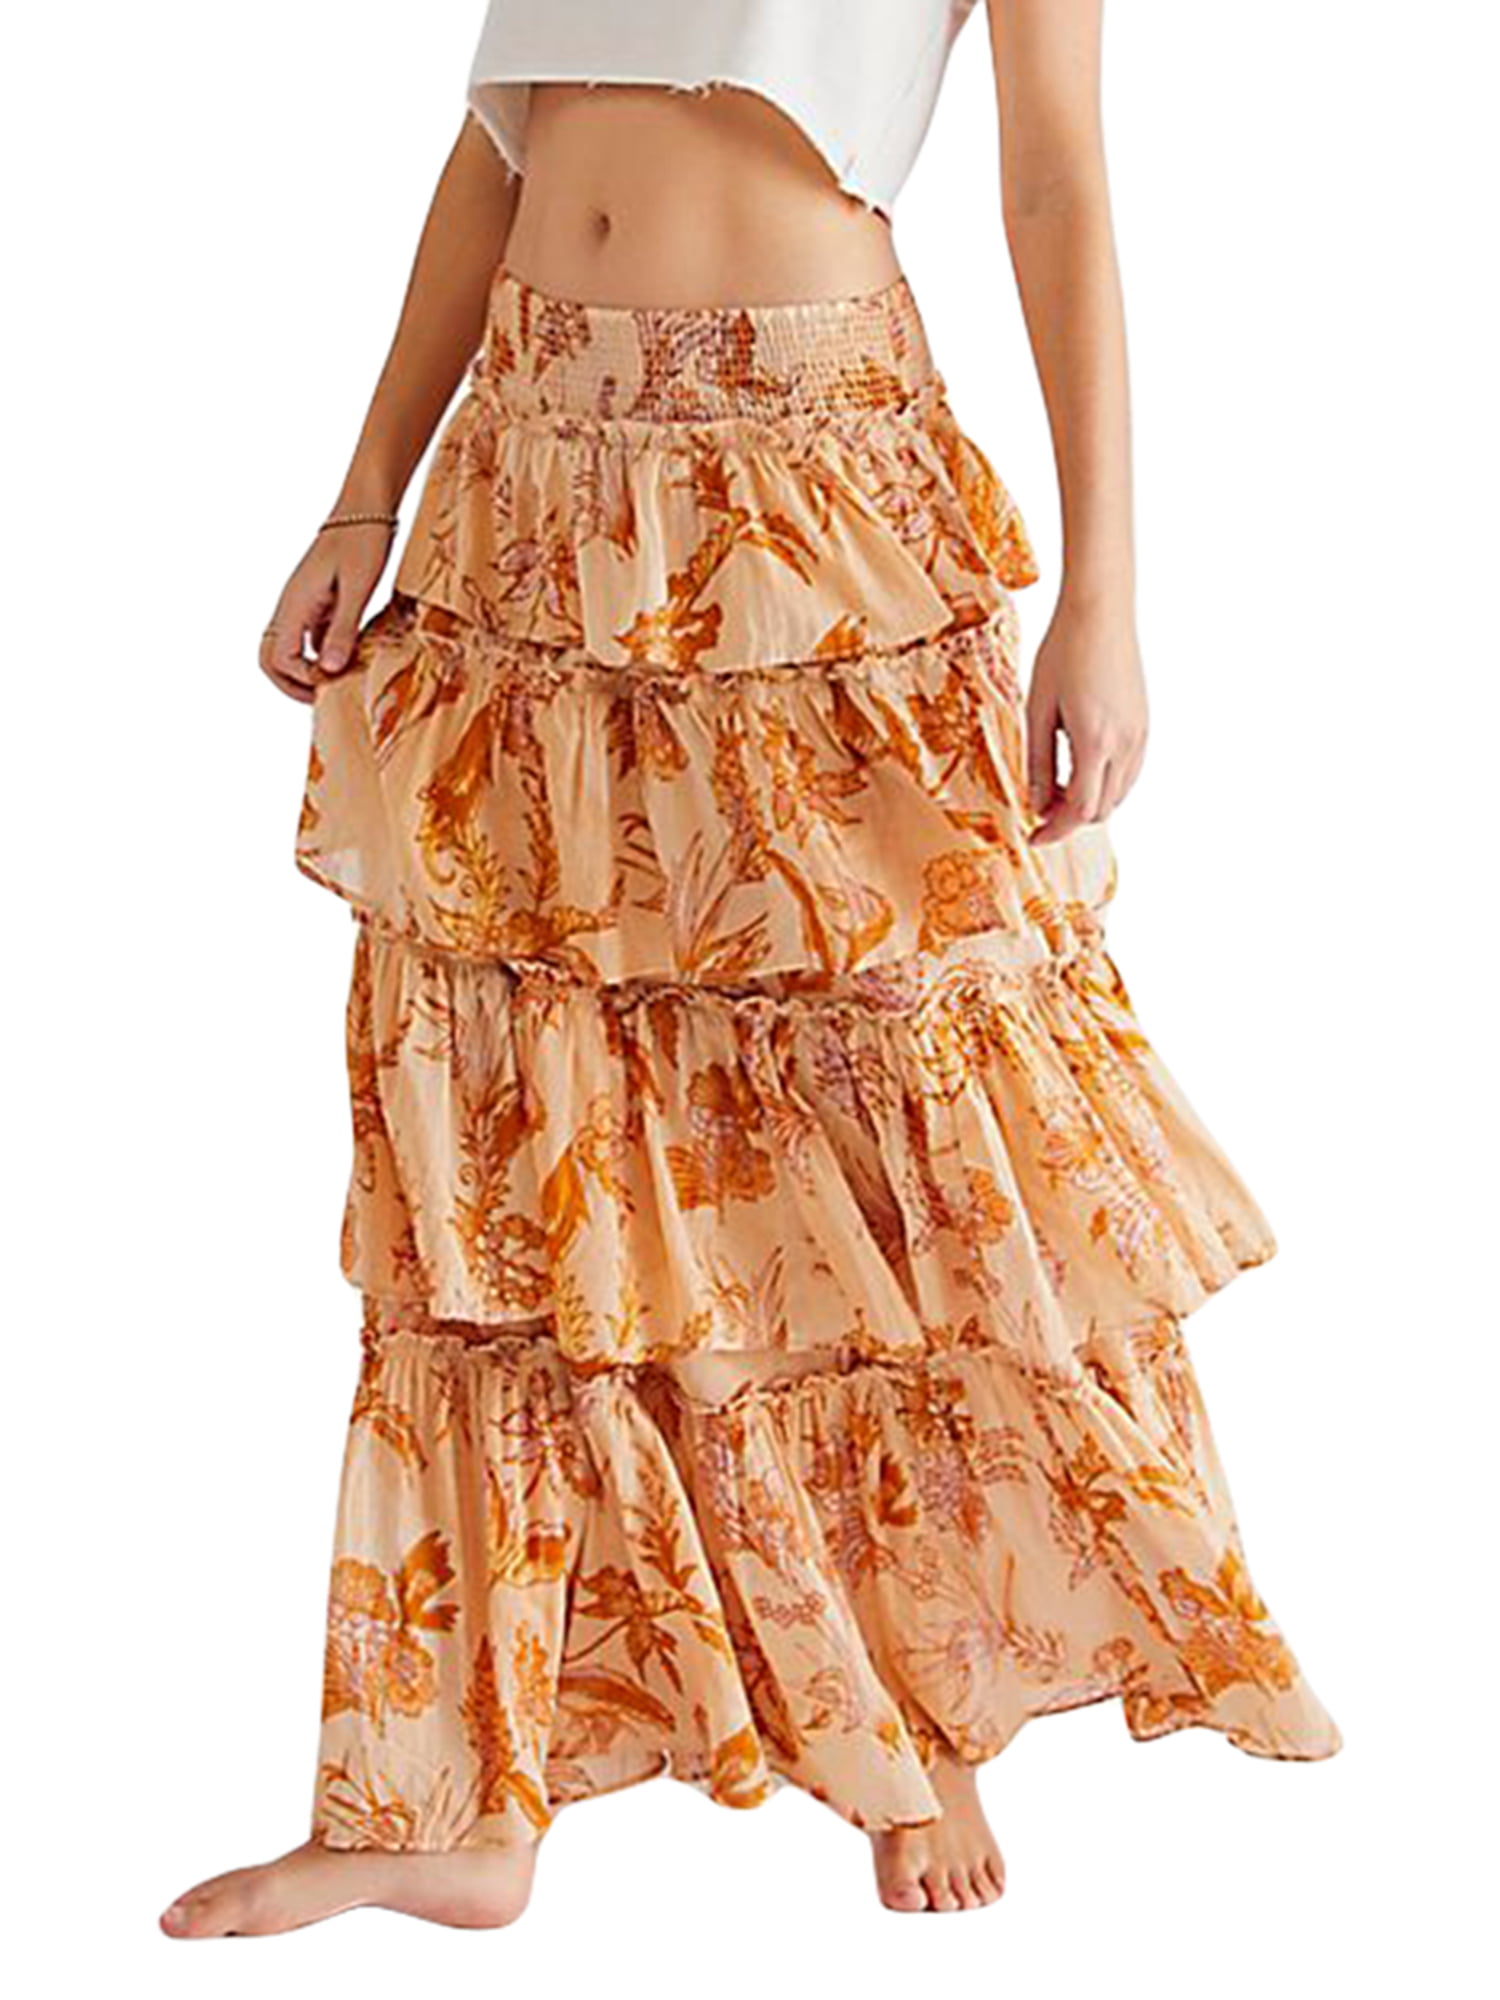 YDXNY Chiffon Skirt Womens Cake Long Skirt Irregular Fishtail Skirt Aline  Pleated Skirt Ruffled Floral Skirt Color  C Size  20M Buy Online at  Best Price in UAE  Amazonae